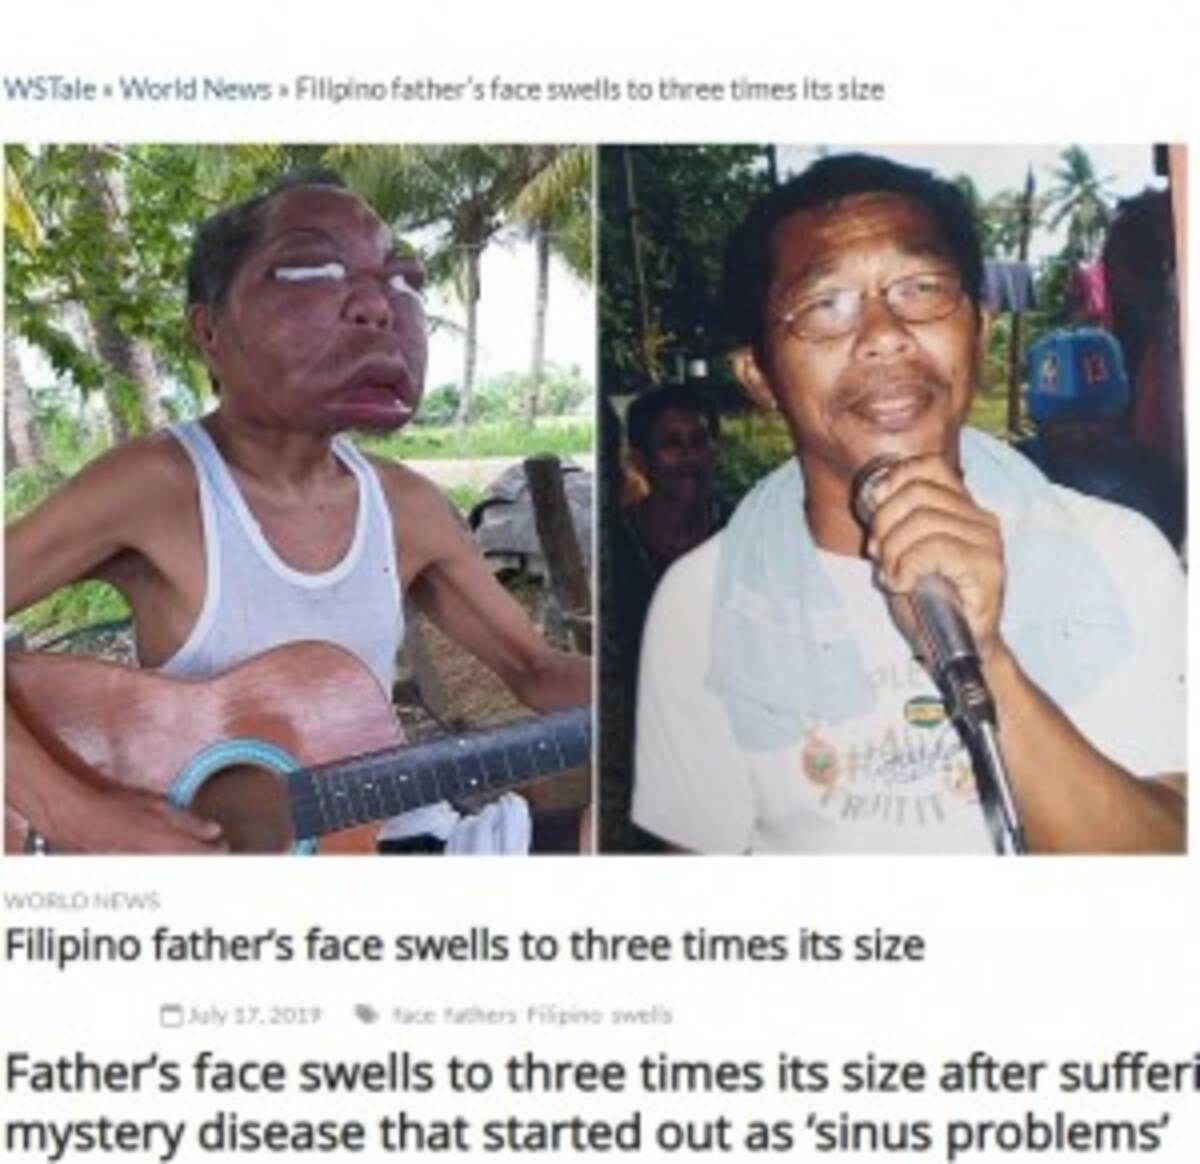 副鼻腔炎と診断されるも原因不明 顔が3倍に腫れ上がってしまったフィリピンの男性 19年7月22日 エキサイトニュース